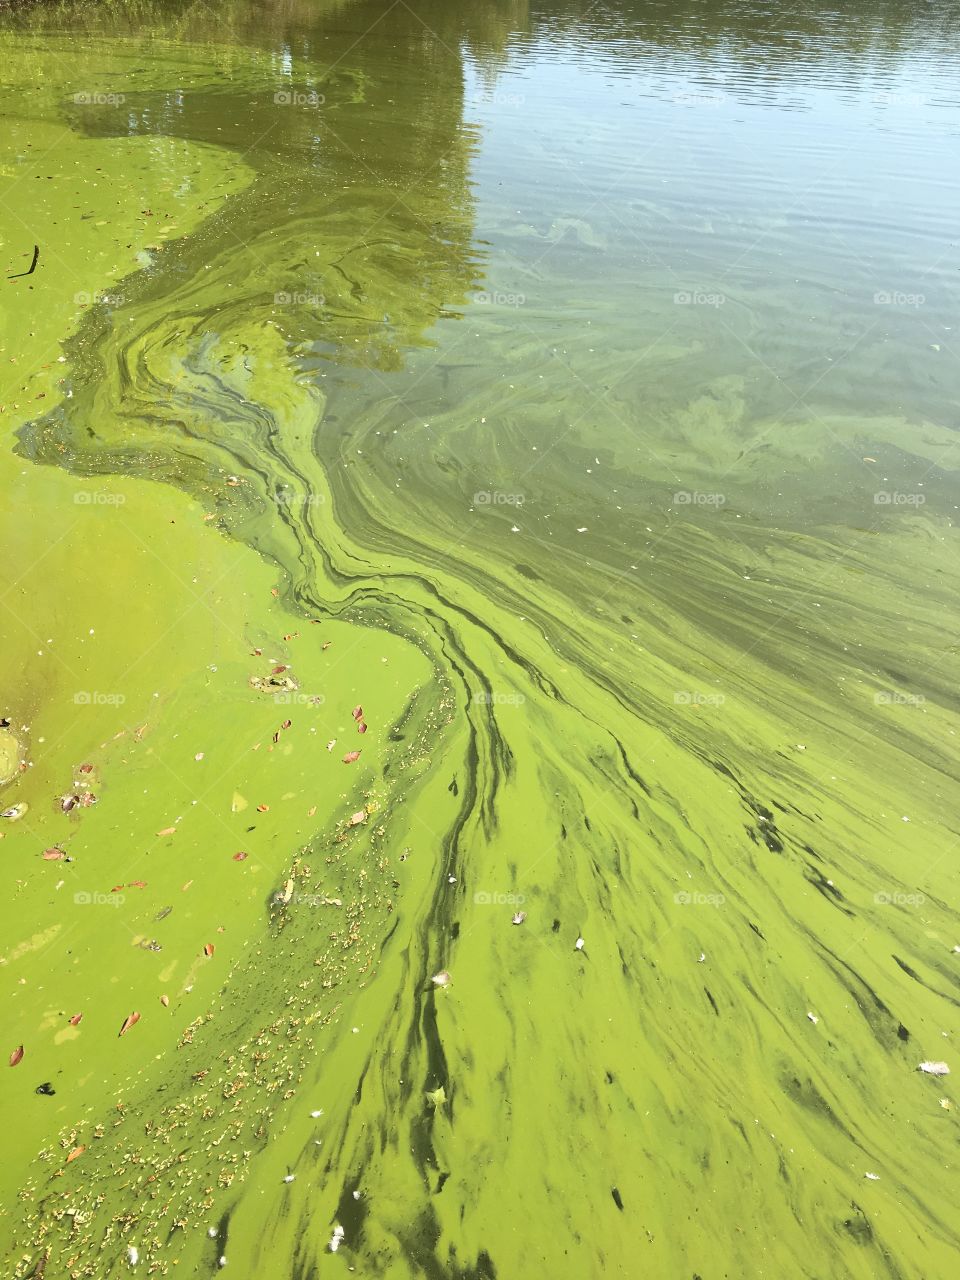 Algae on lake.